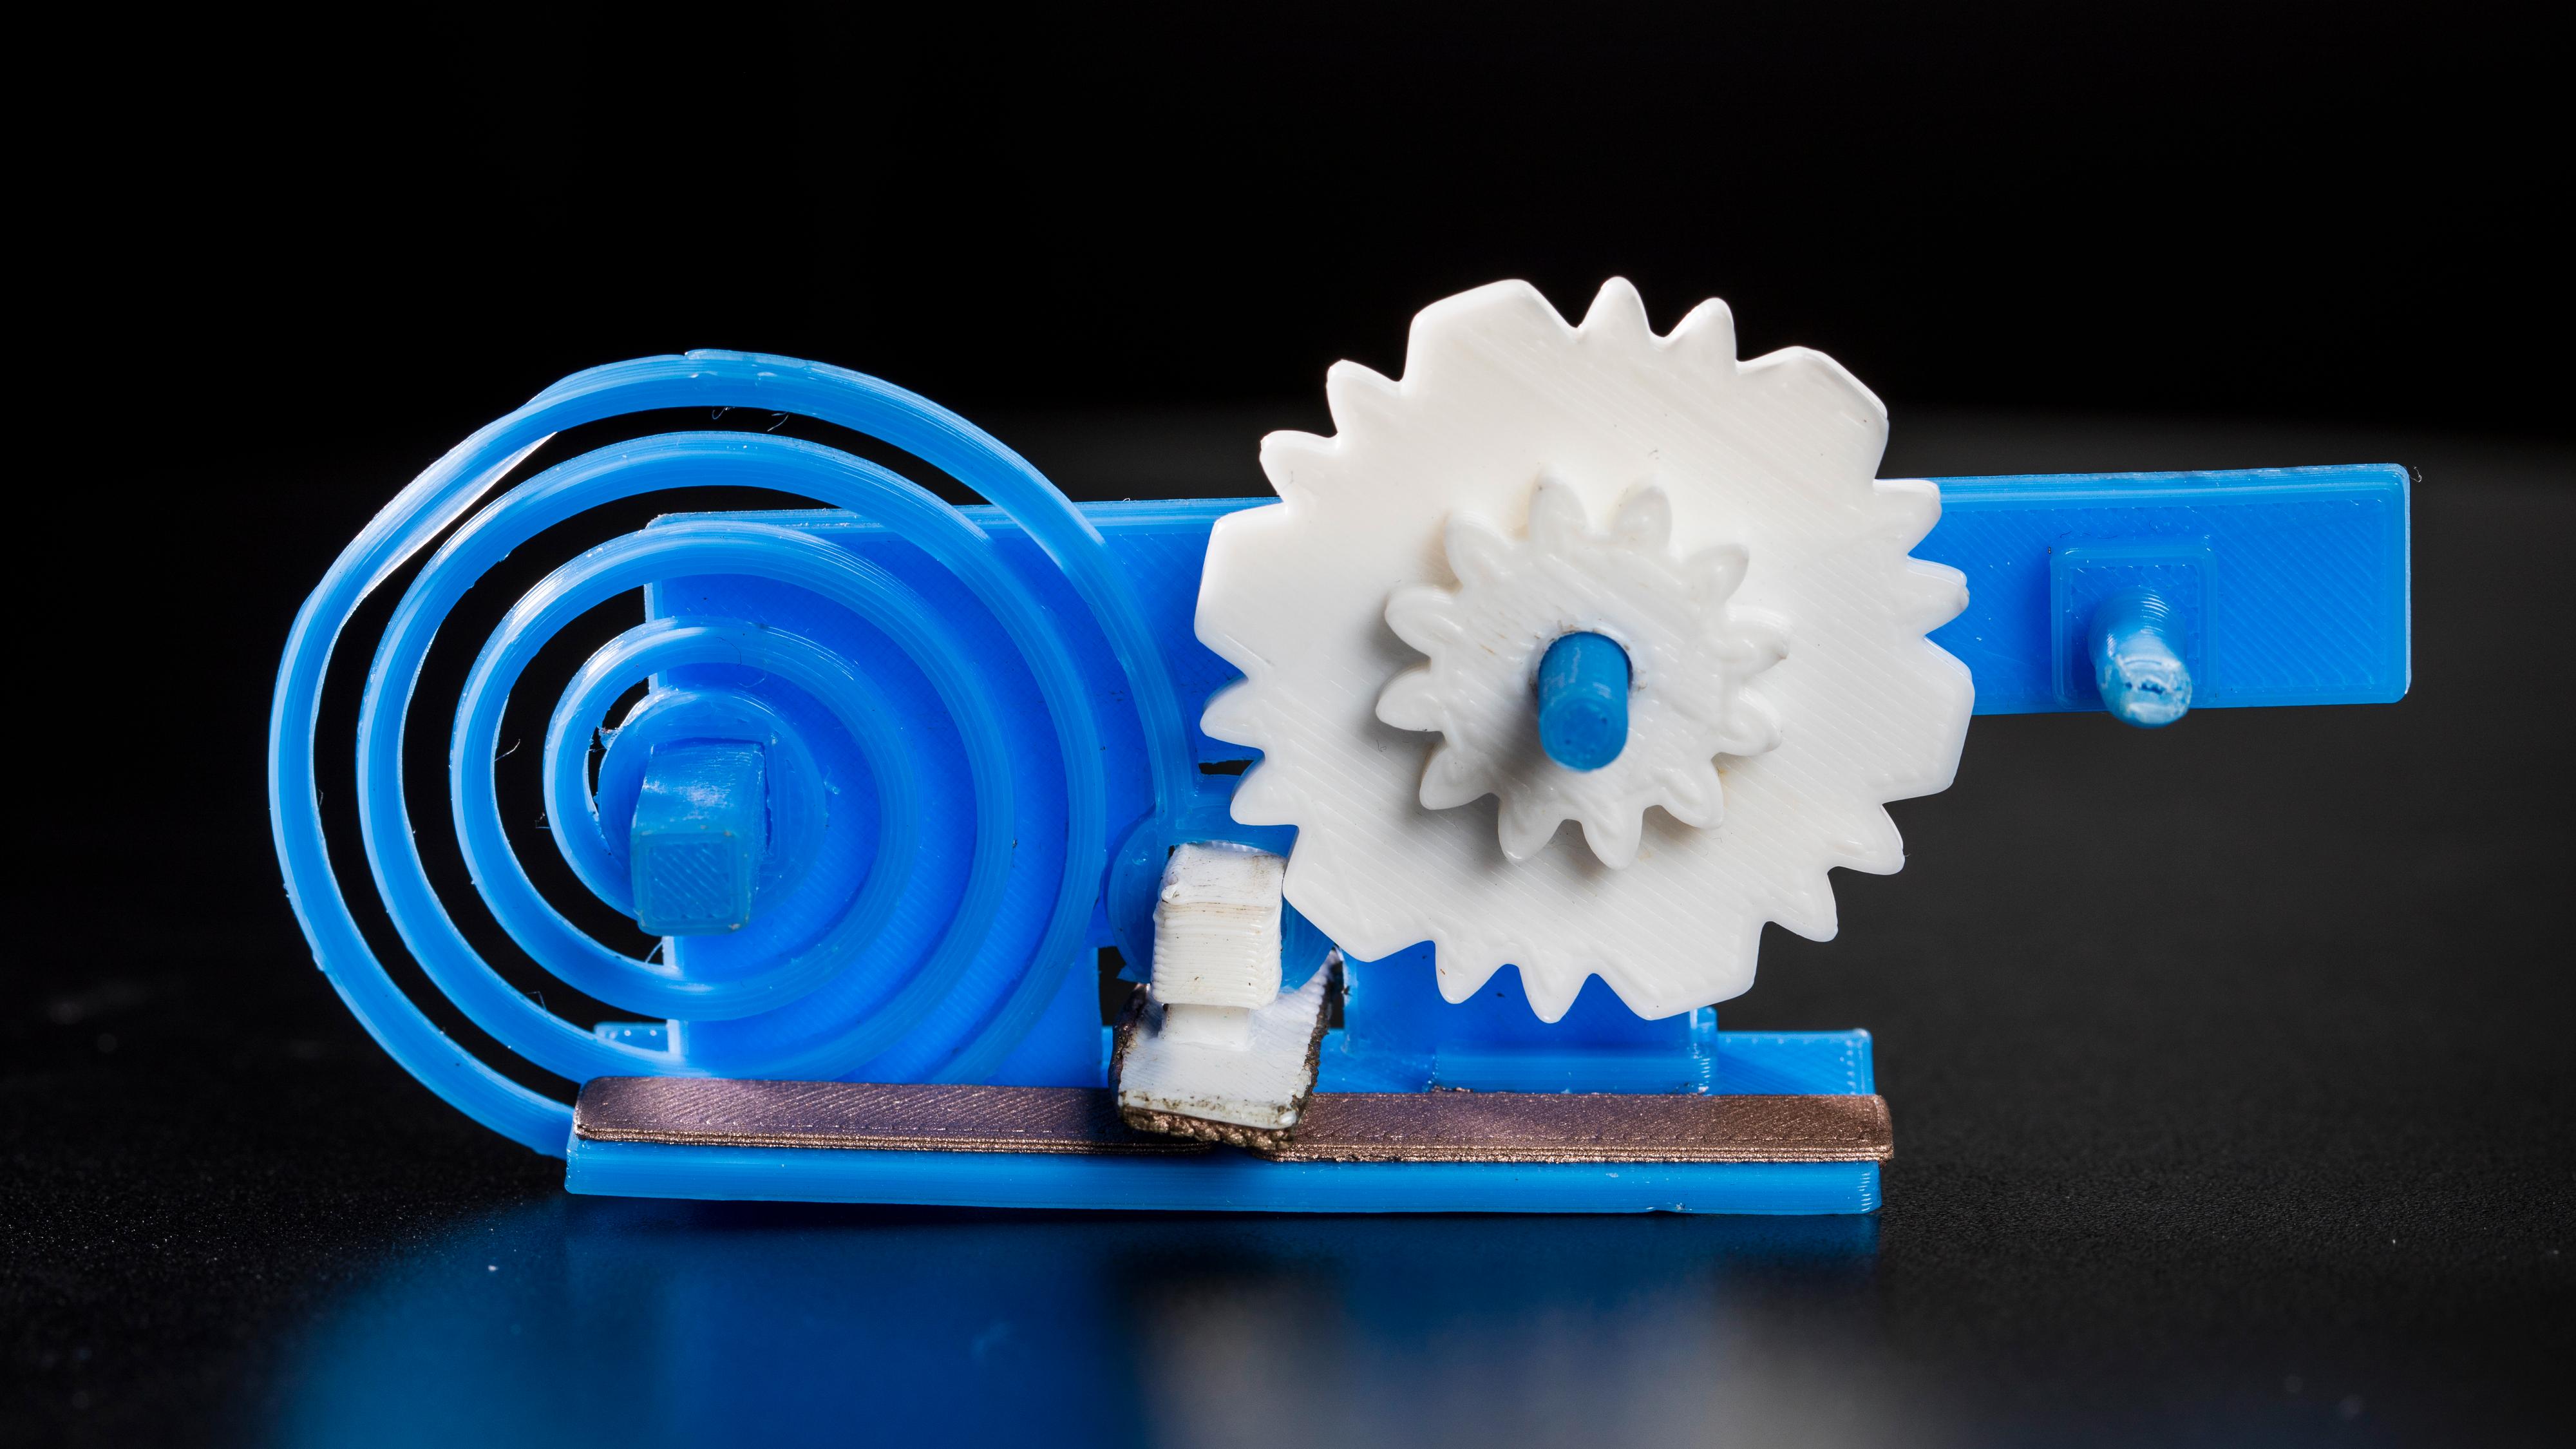 Denne 3D-skrevne plastdingsen kan kobles på nettet – uten batteri og elektronikk